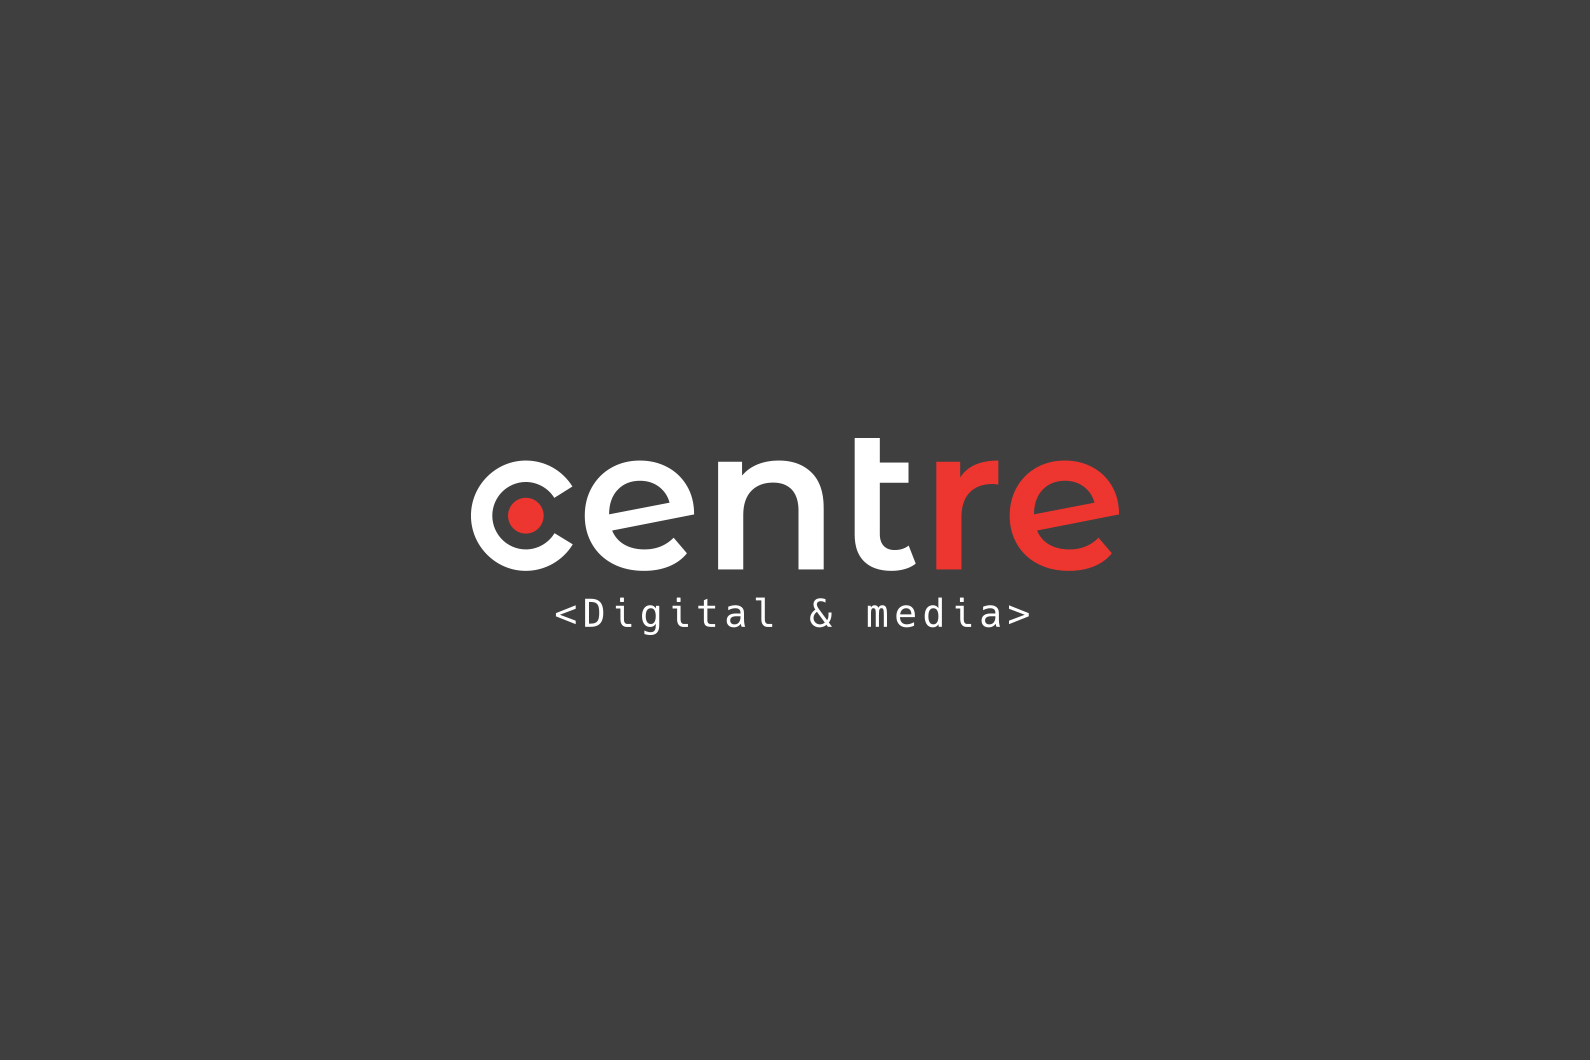 Centre digital & media